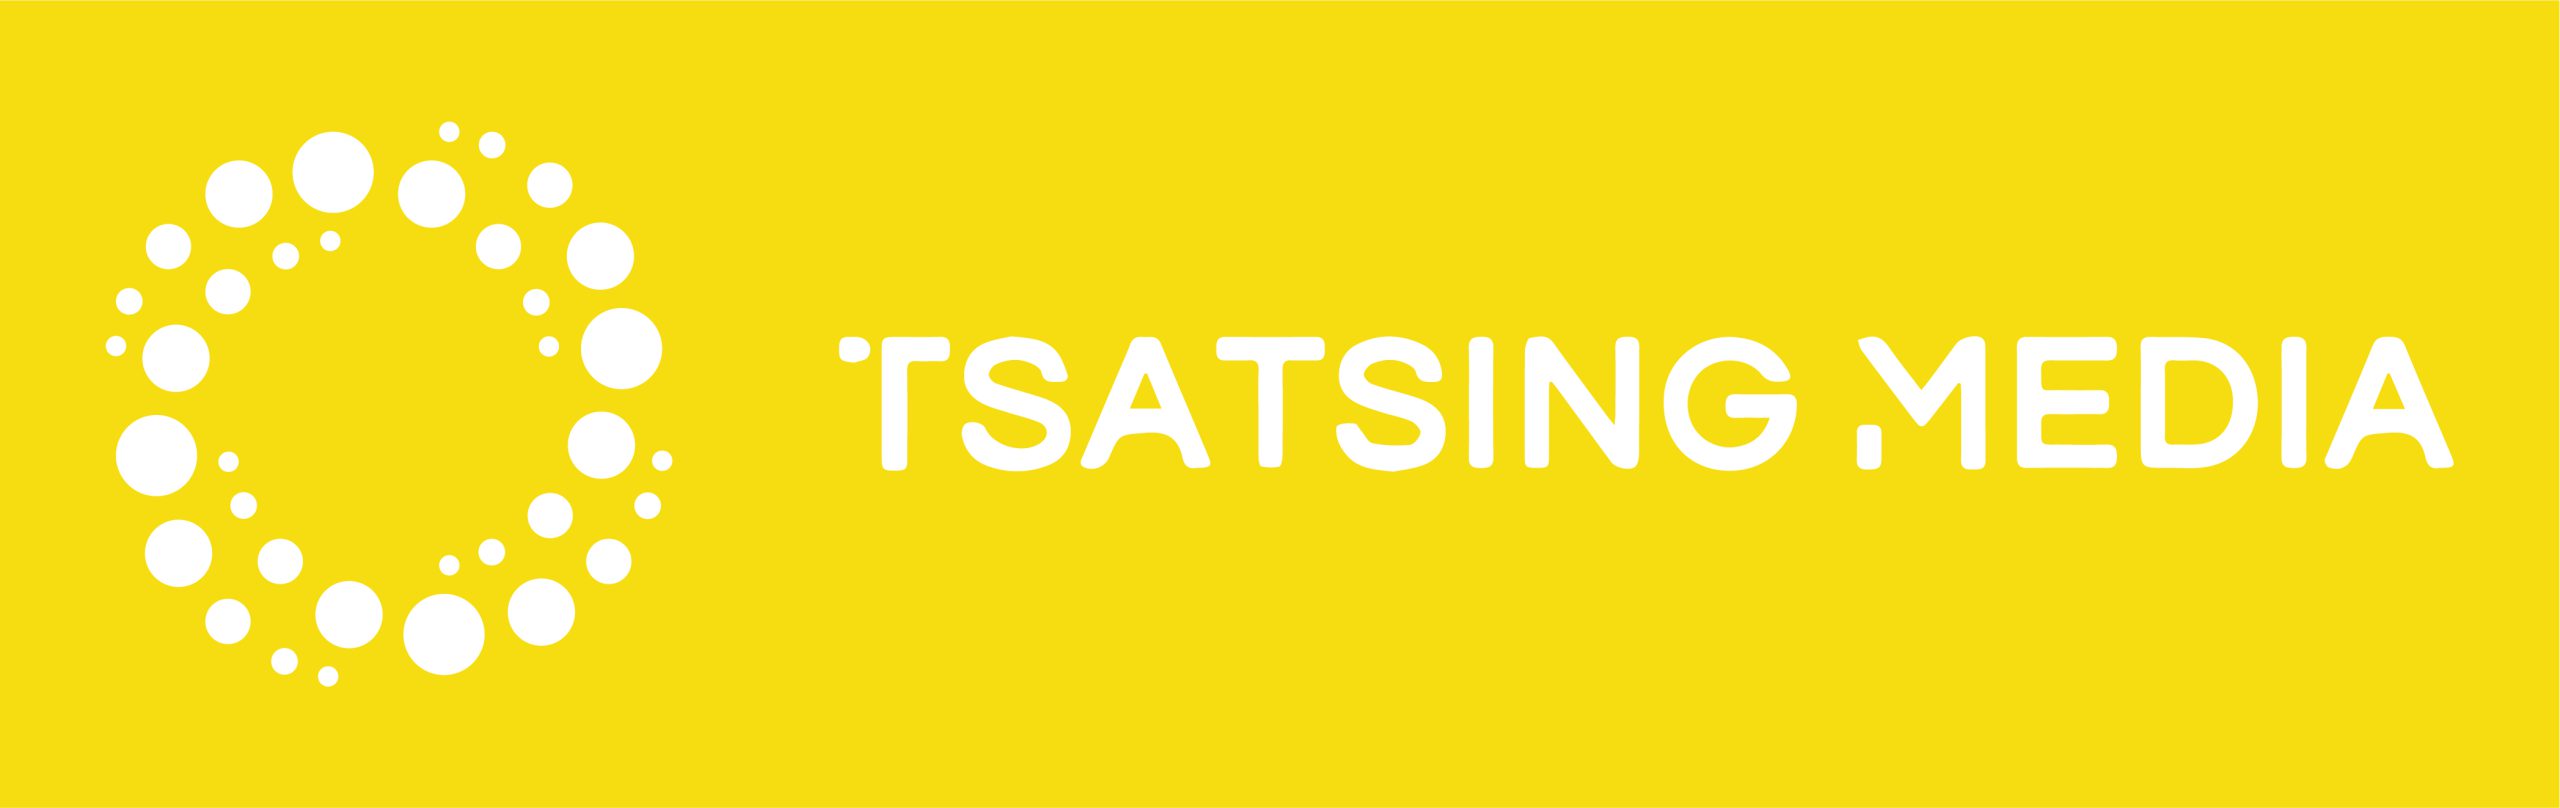 Tsatsing Media logo-02